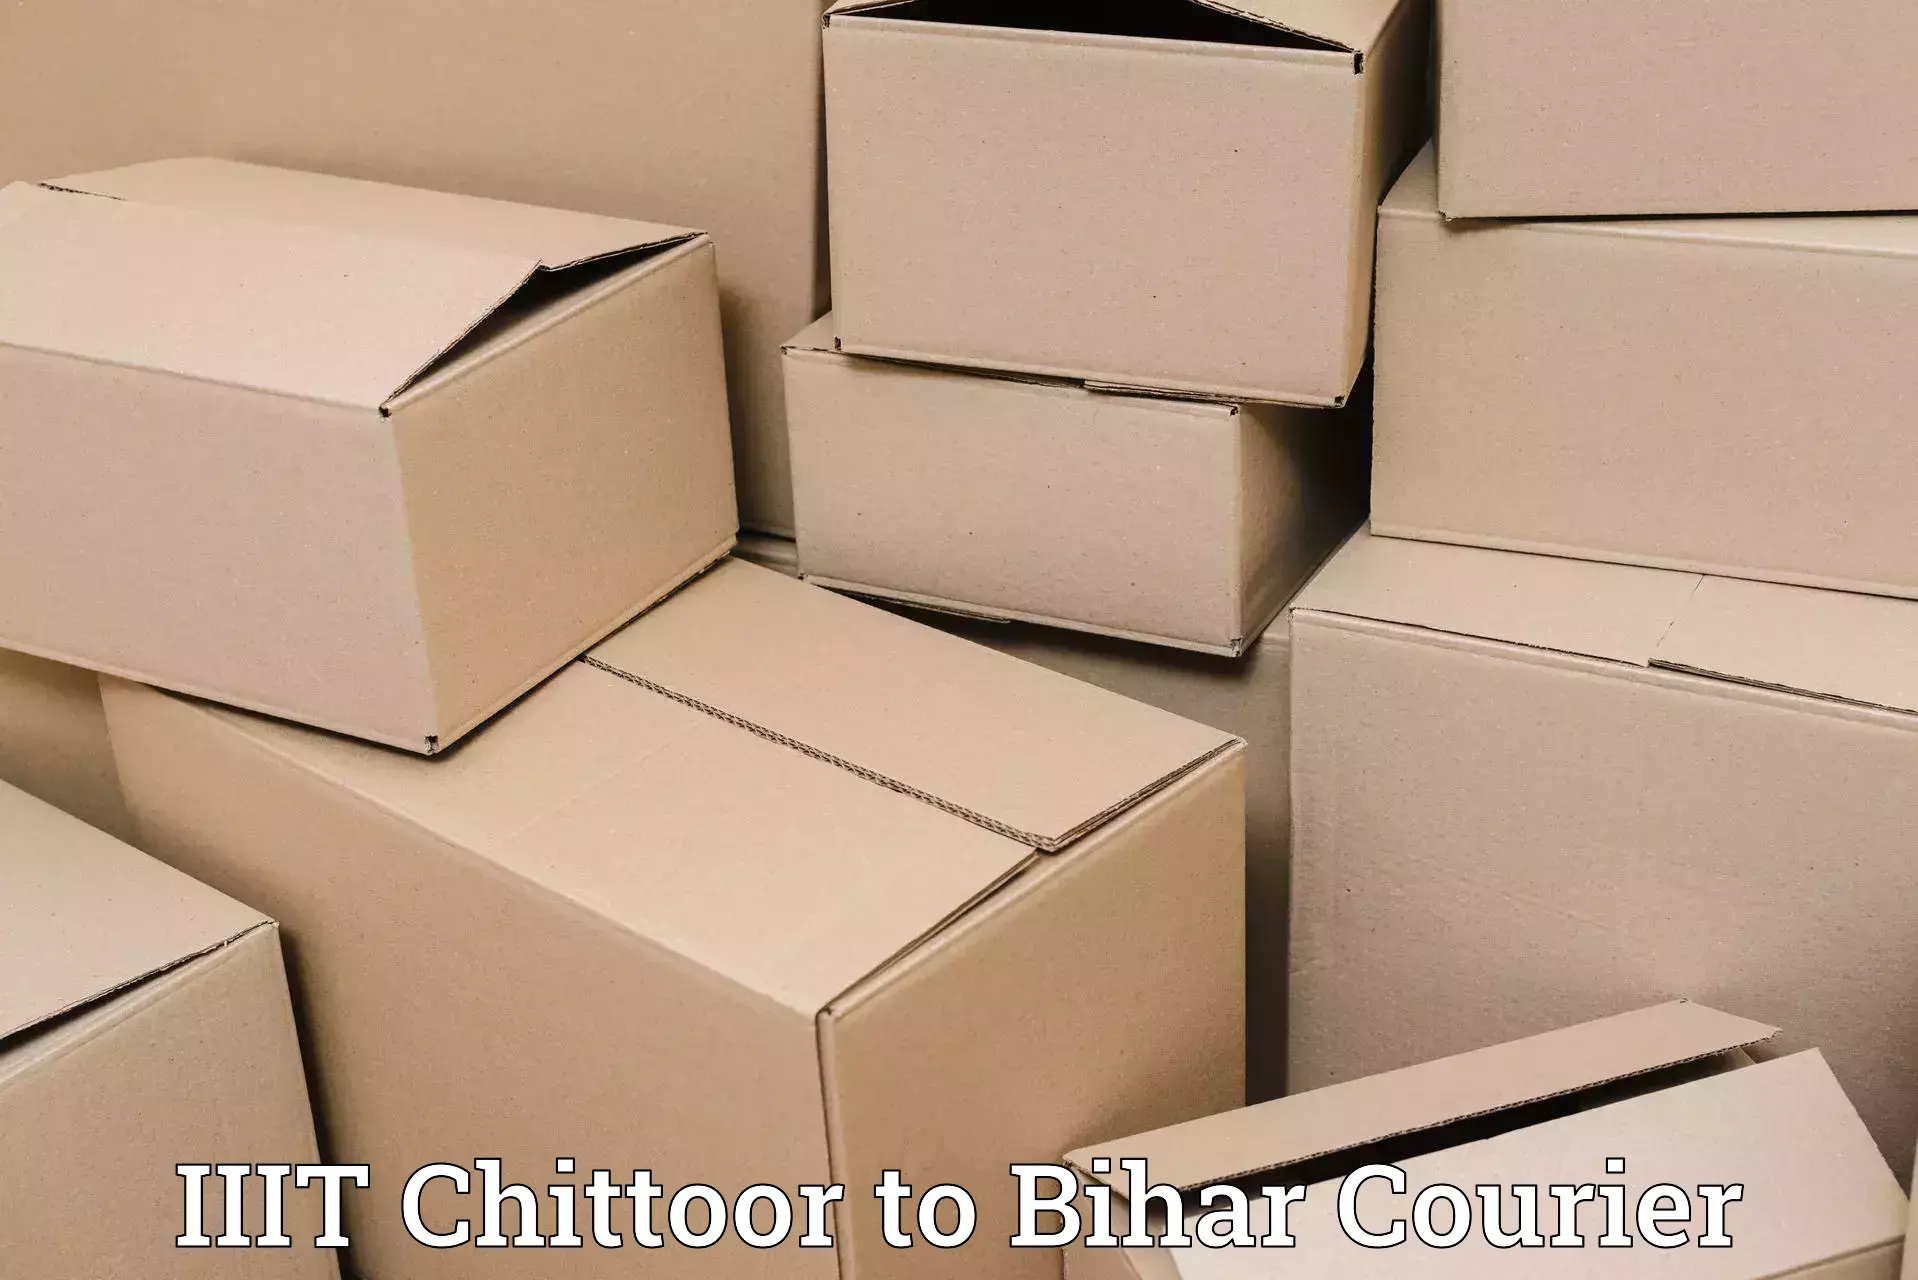 Professional parcel services IIIT Chittoor to Bihar